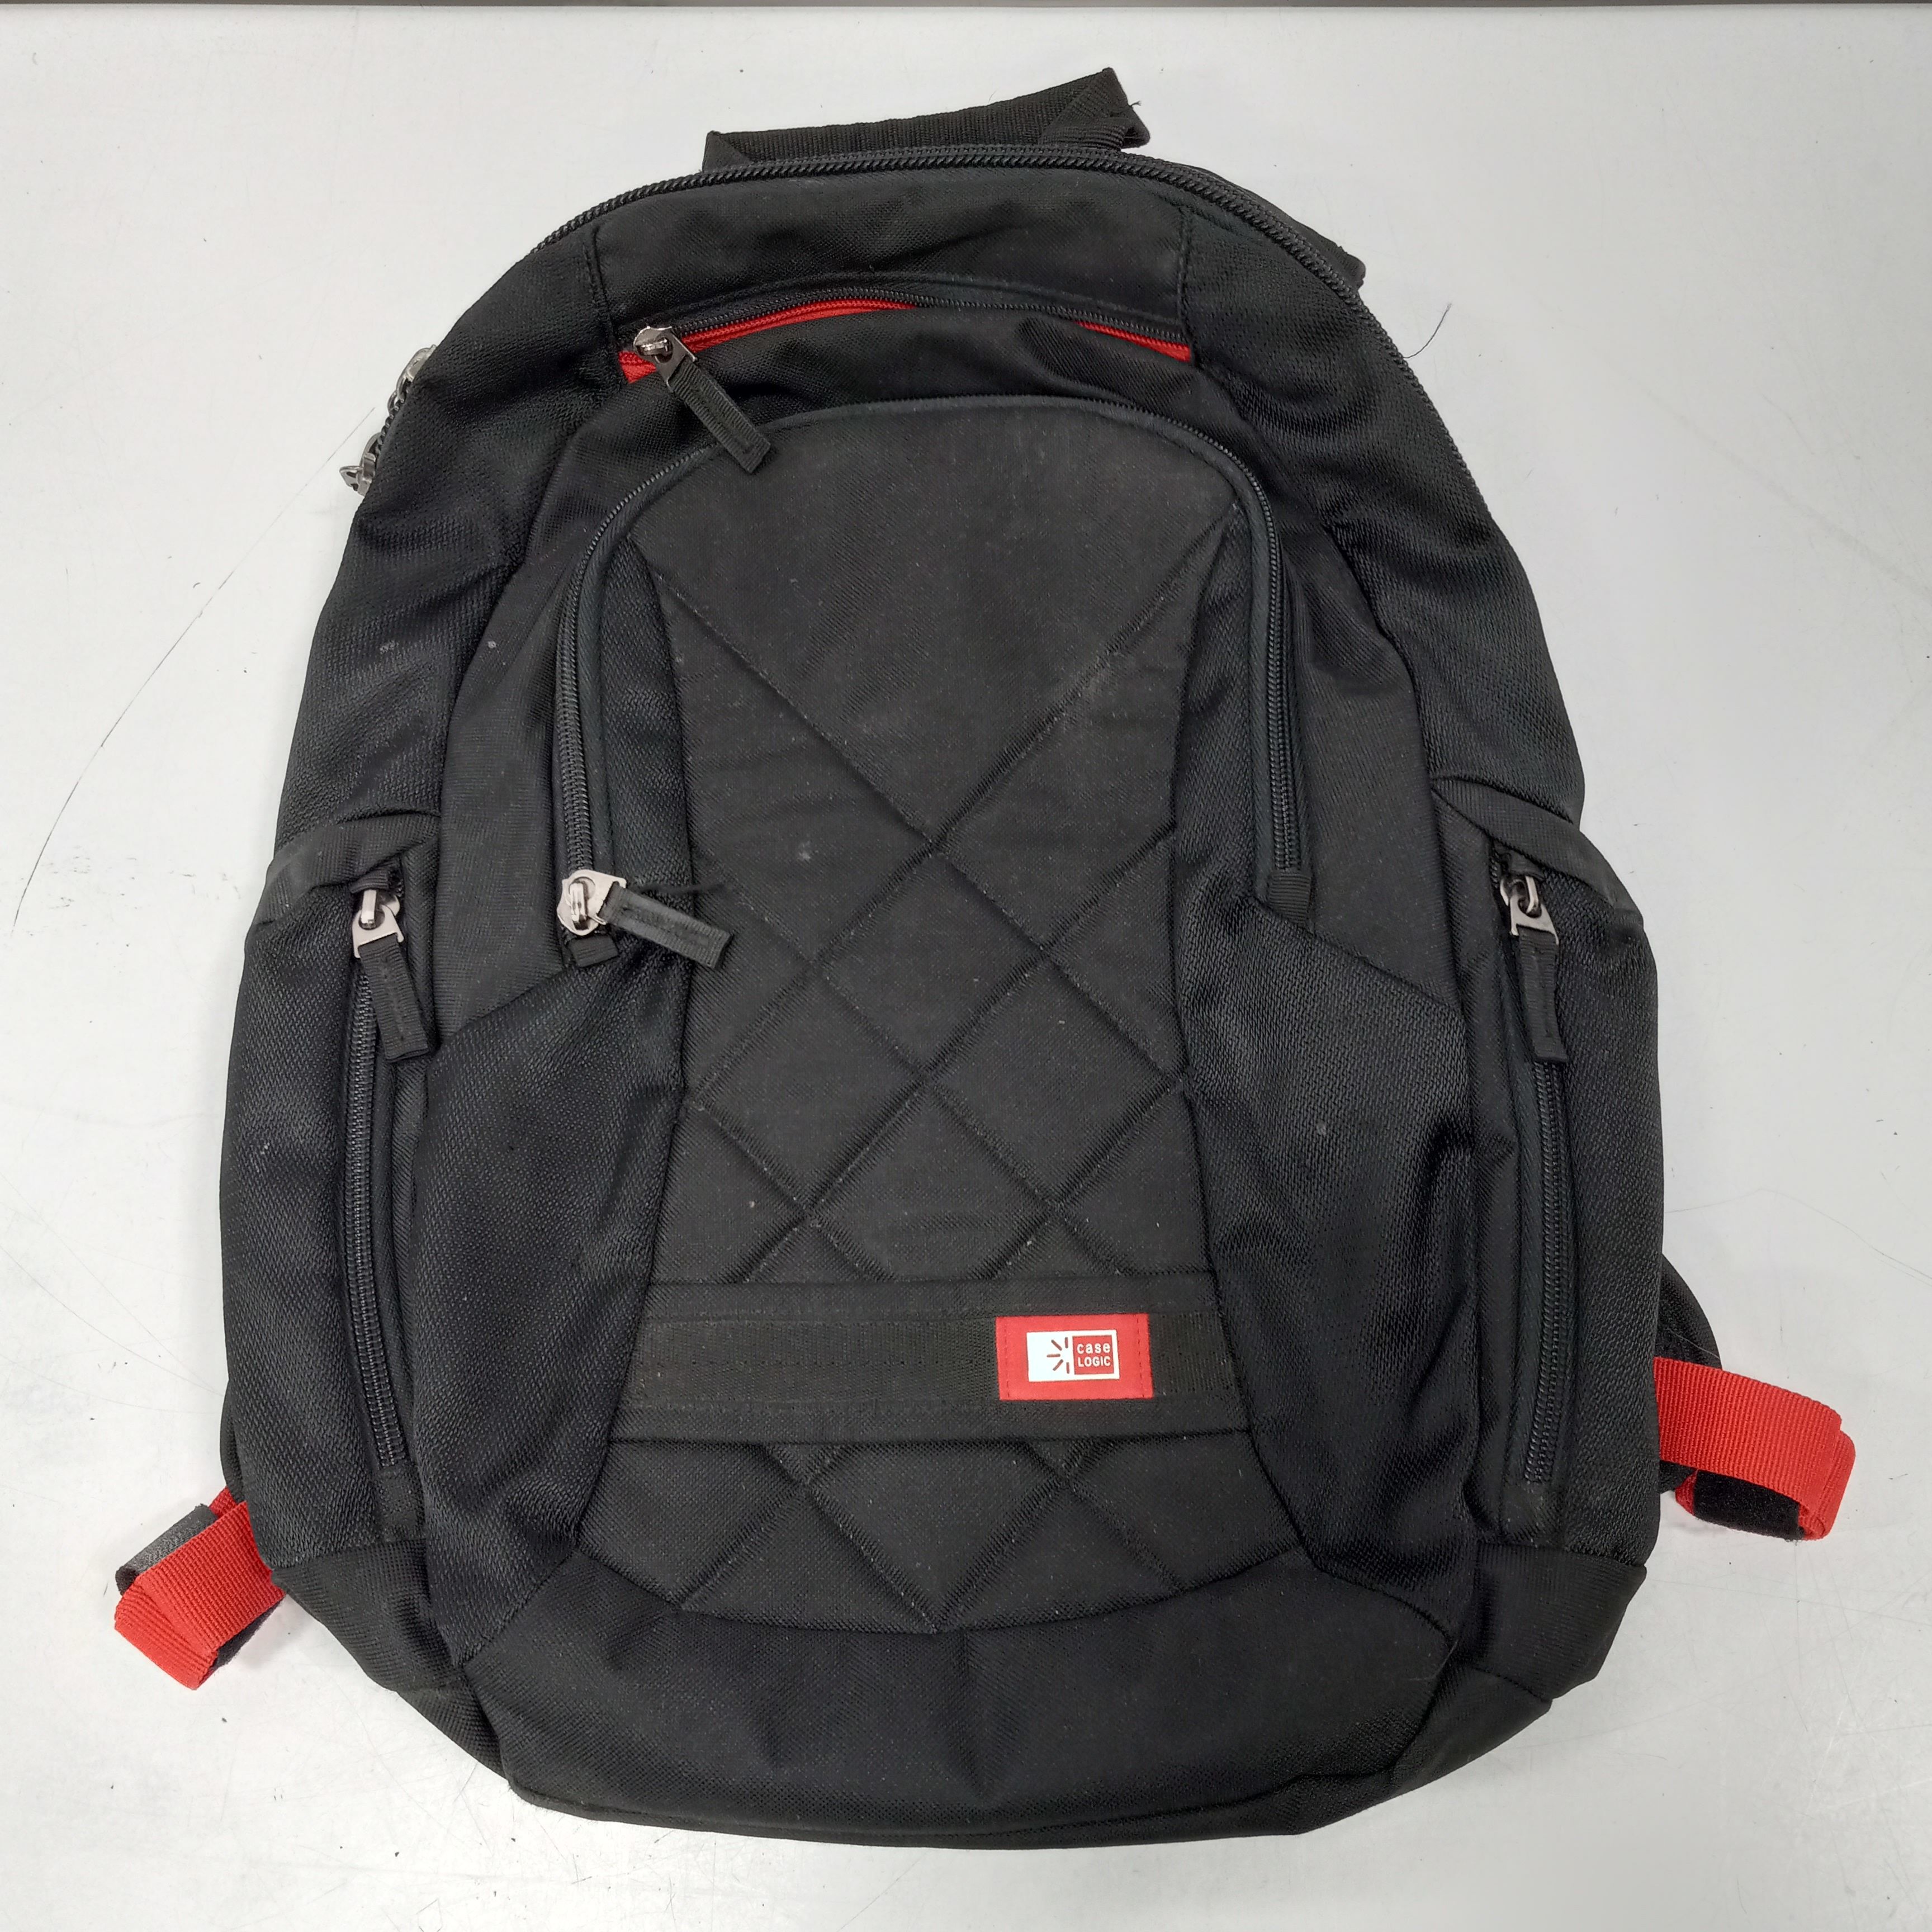 Best Buy: Case Logic Backpack for 15.6